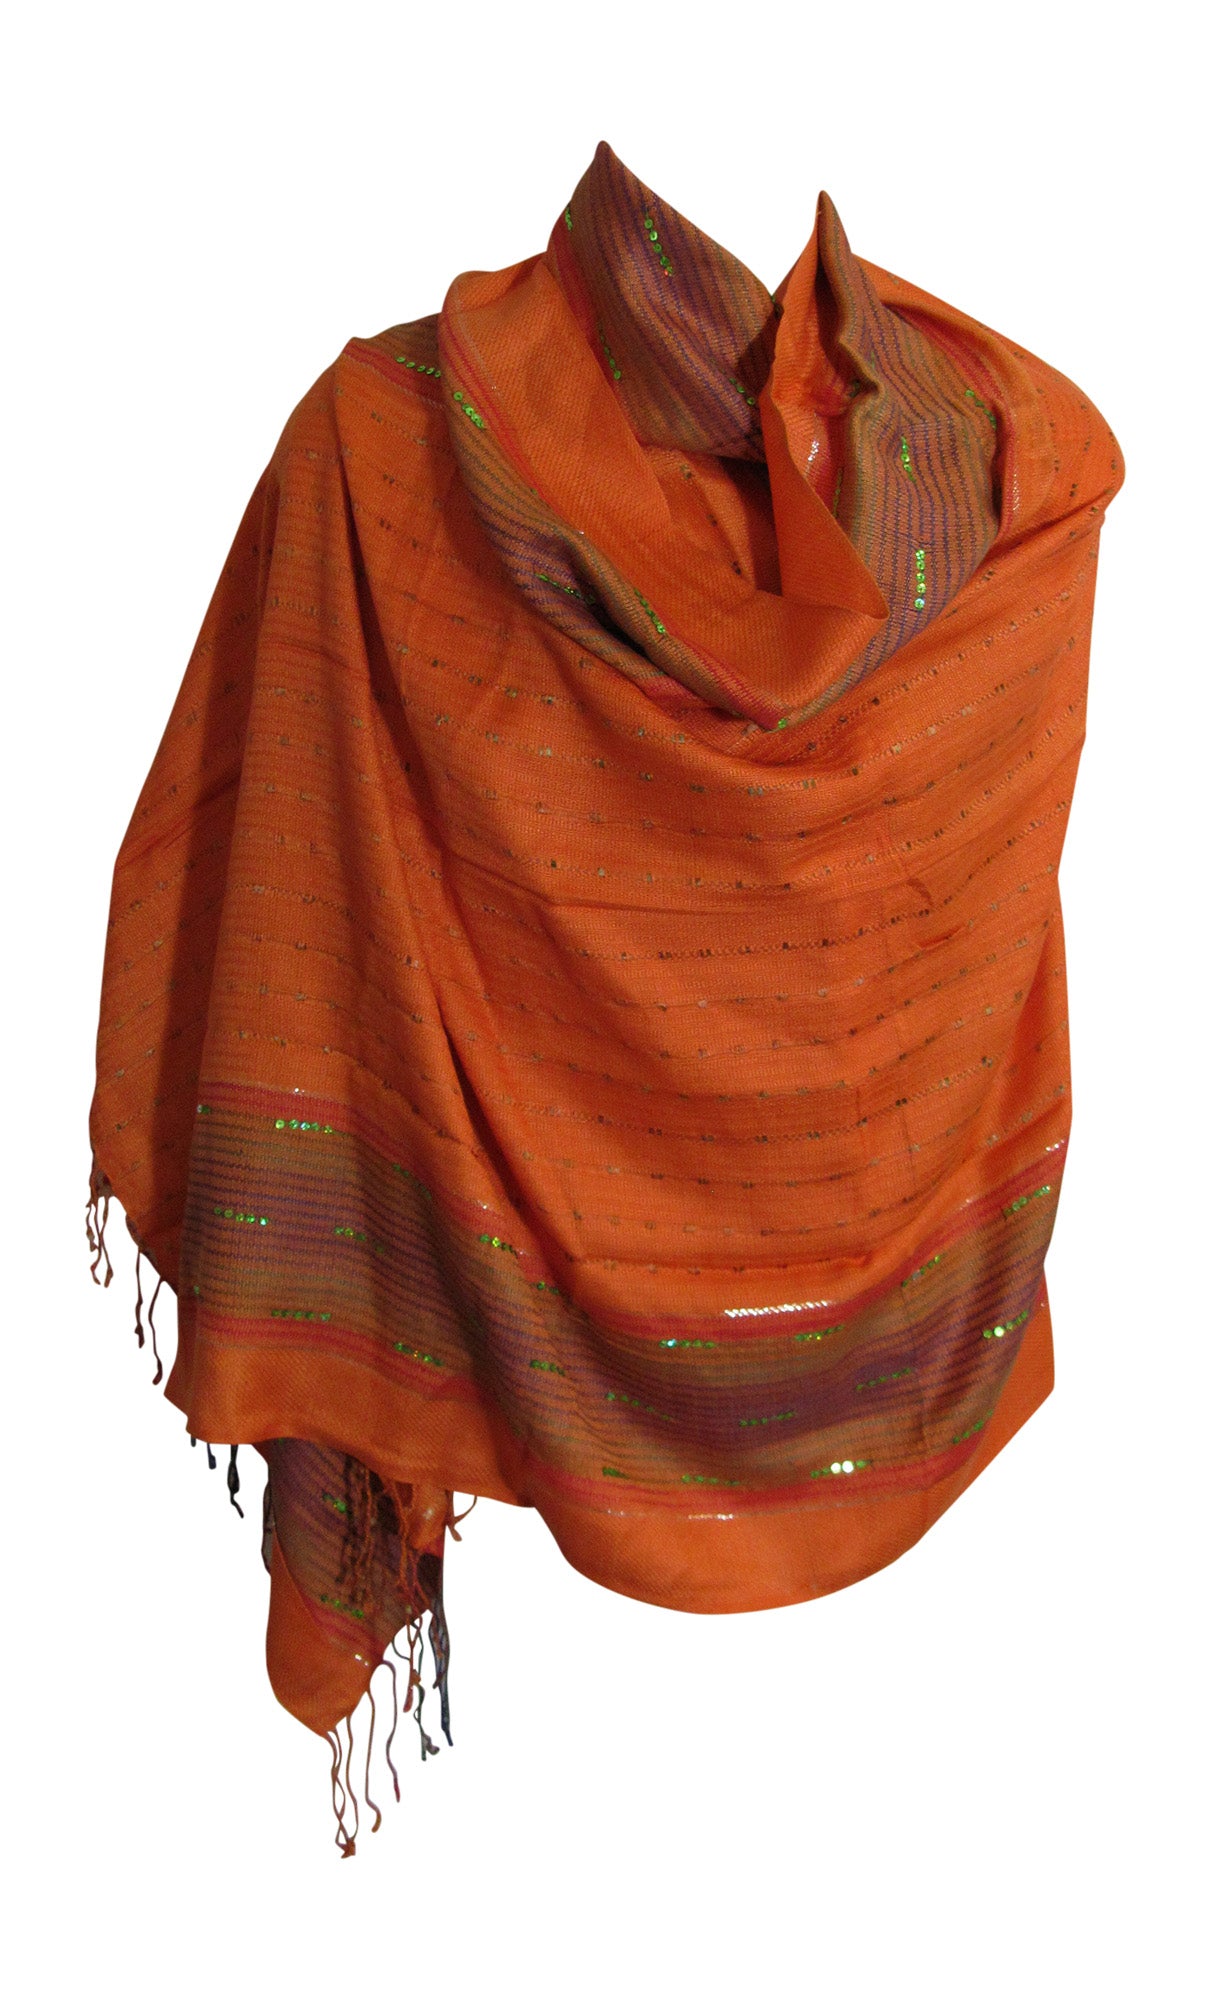 Orange Pashmina Scarf Bandana Fringe Muffler JK419 - Ambali Fashion Scarves accessory, bohemian, boho, casual, classic, ethnic, gypsy, indian, shawl, sixties, wrap